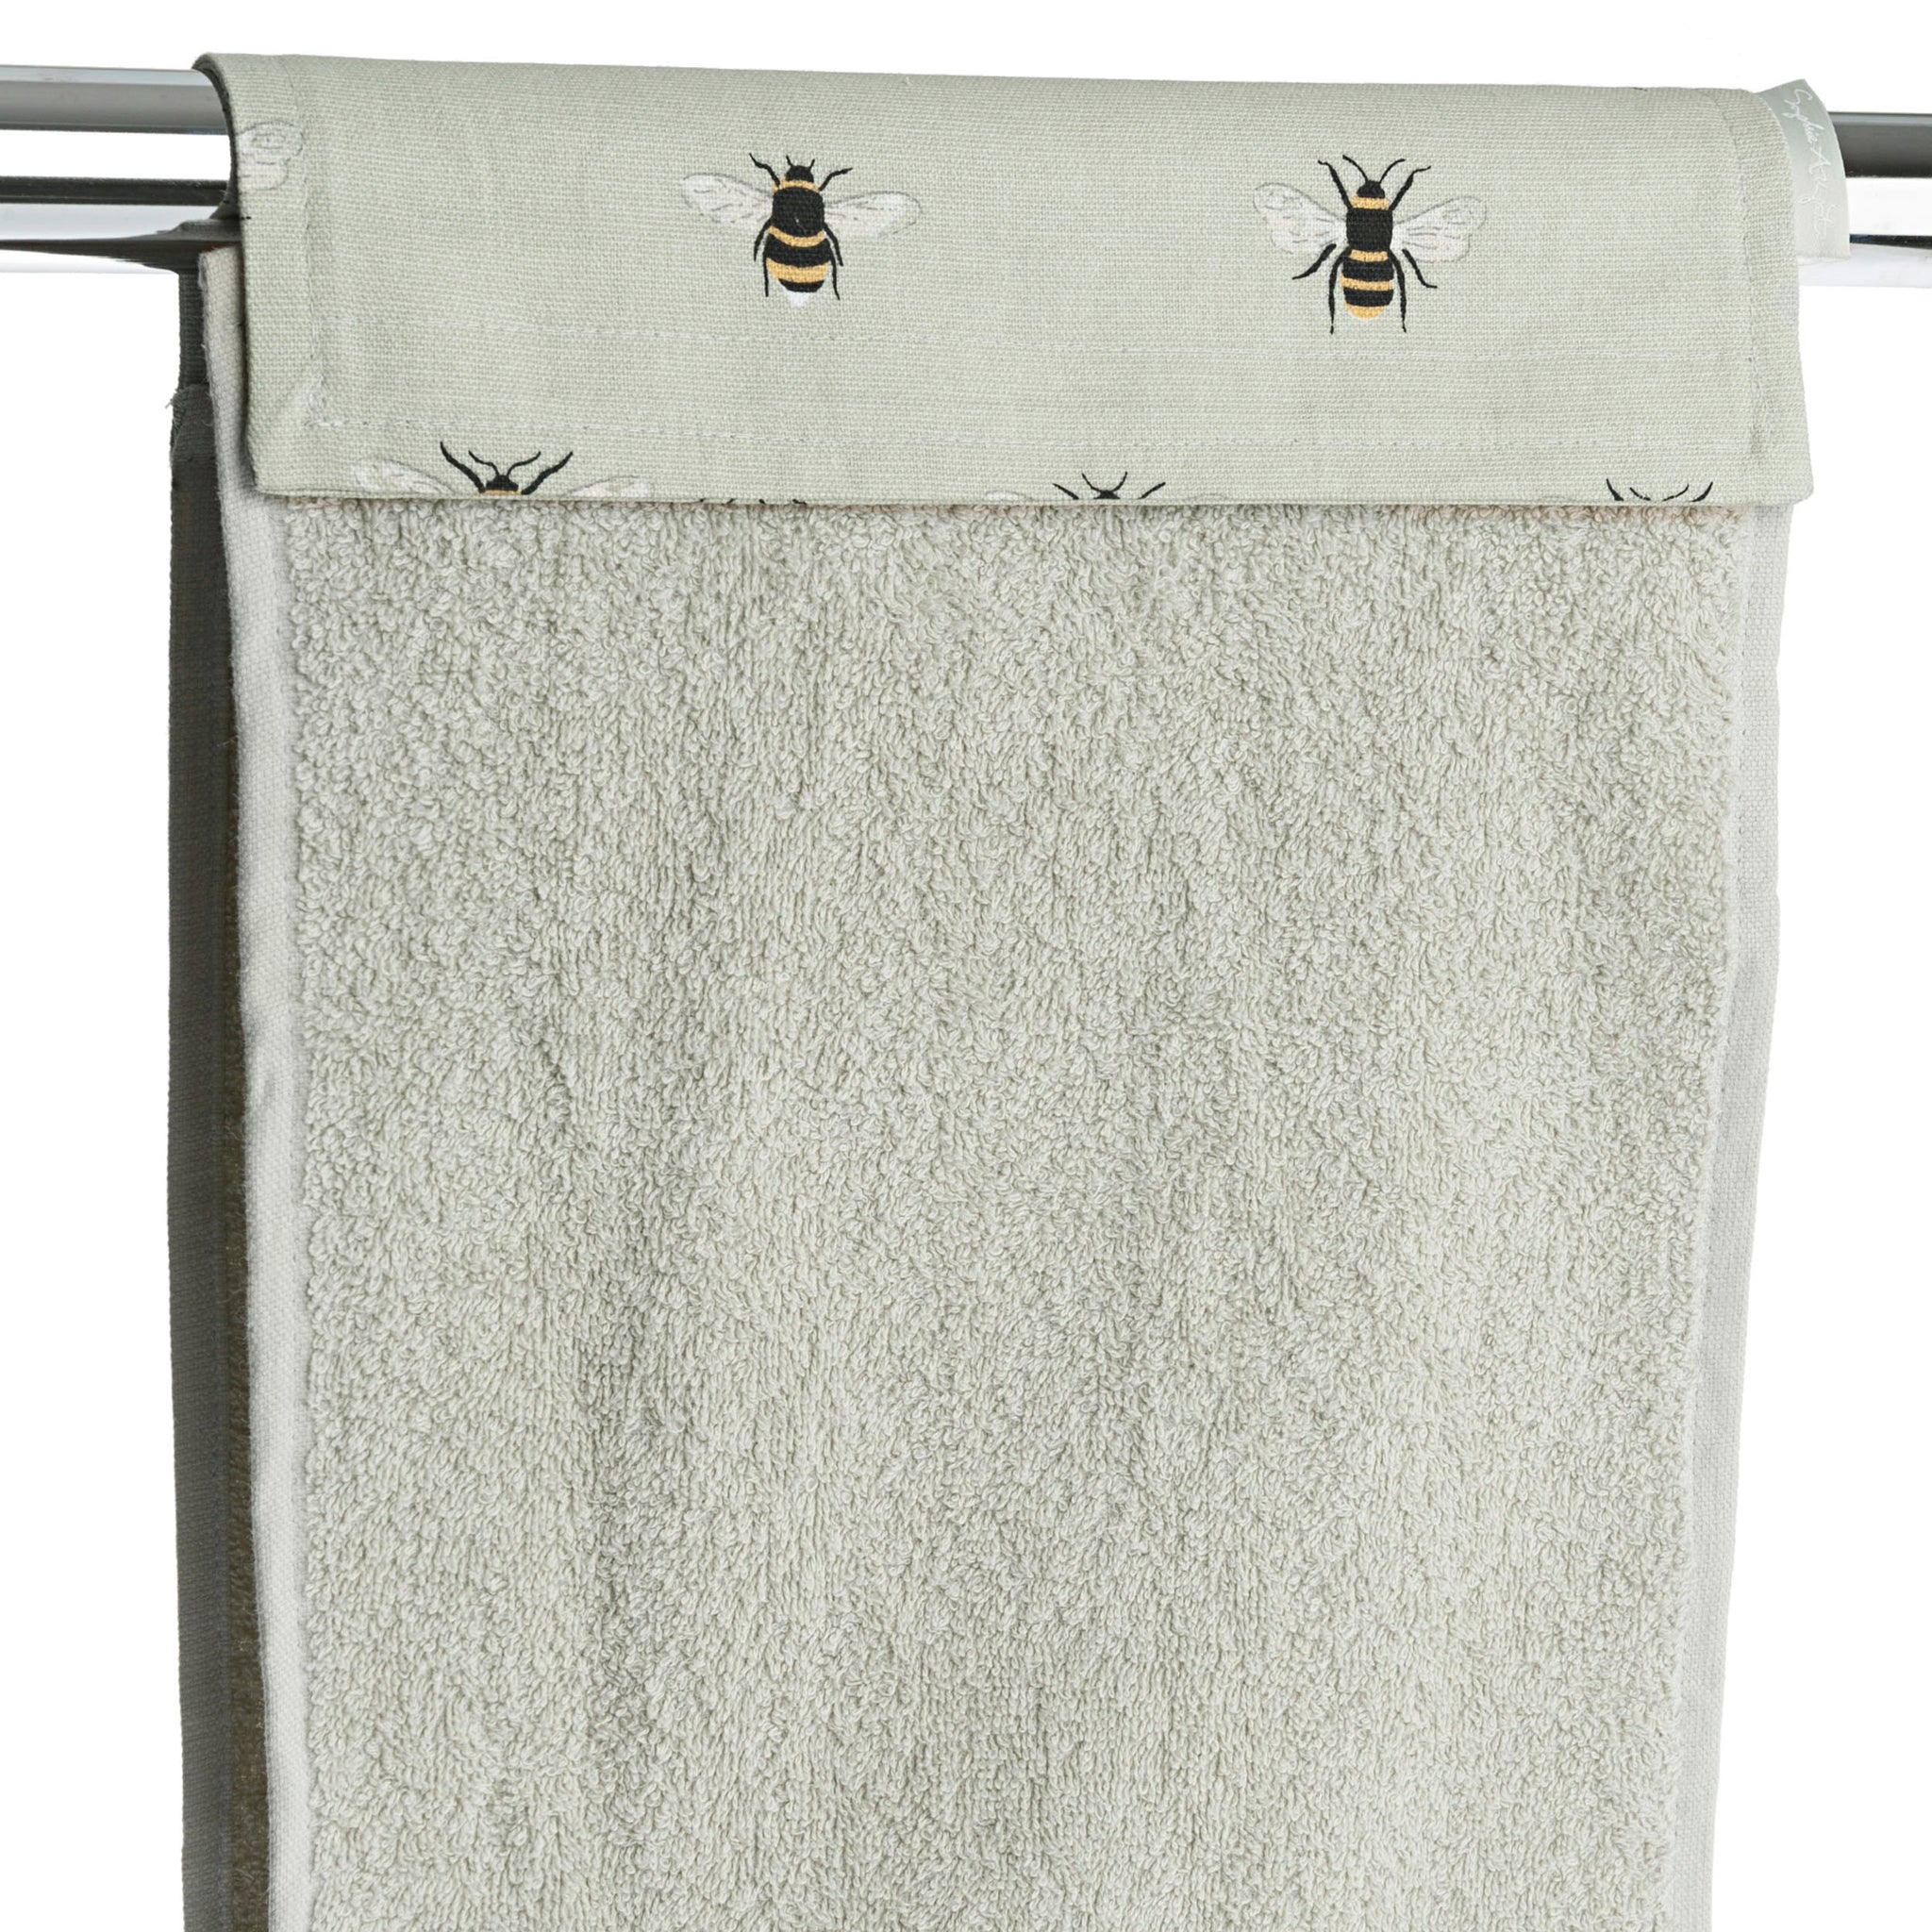 Bees Roller Hand Towel